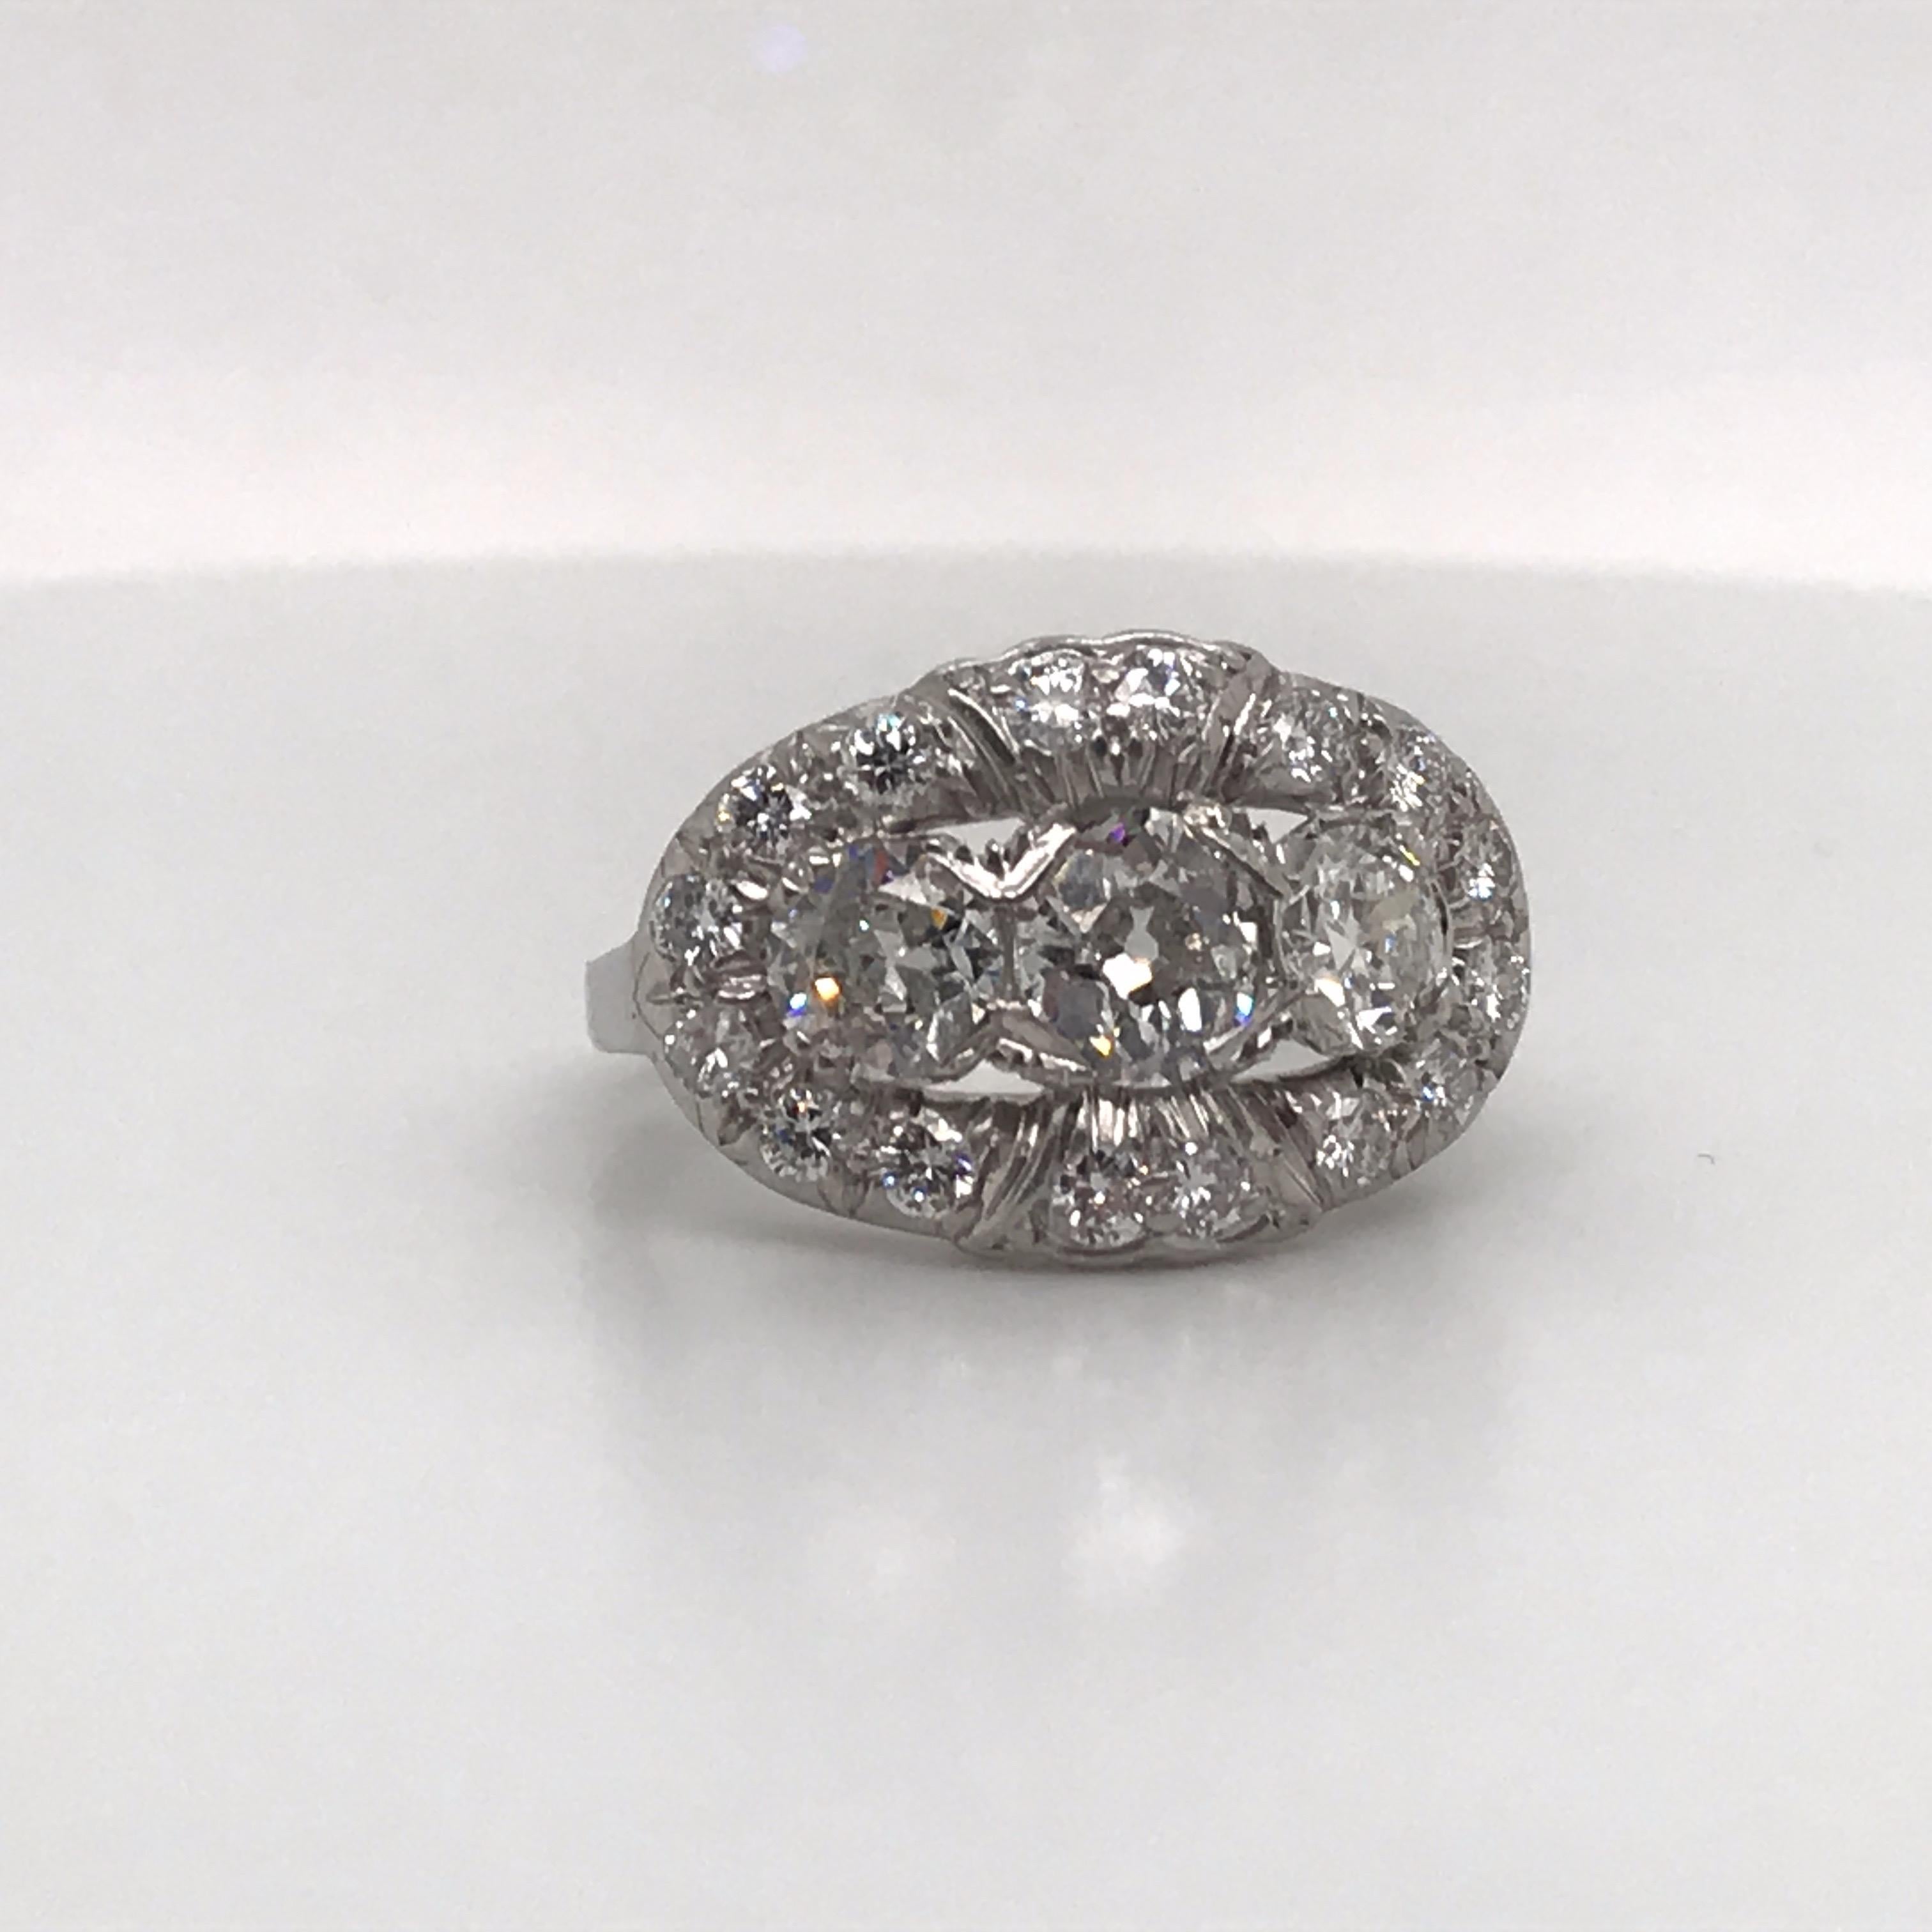 Bague vintage en diamant comportant trois diamants flanqués de plus petits diamants pesant environ 2 carats, réalisée en platine.